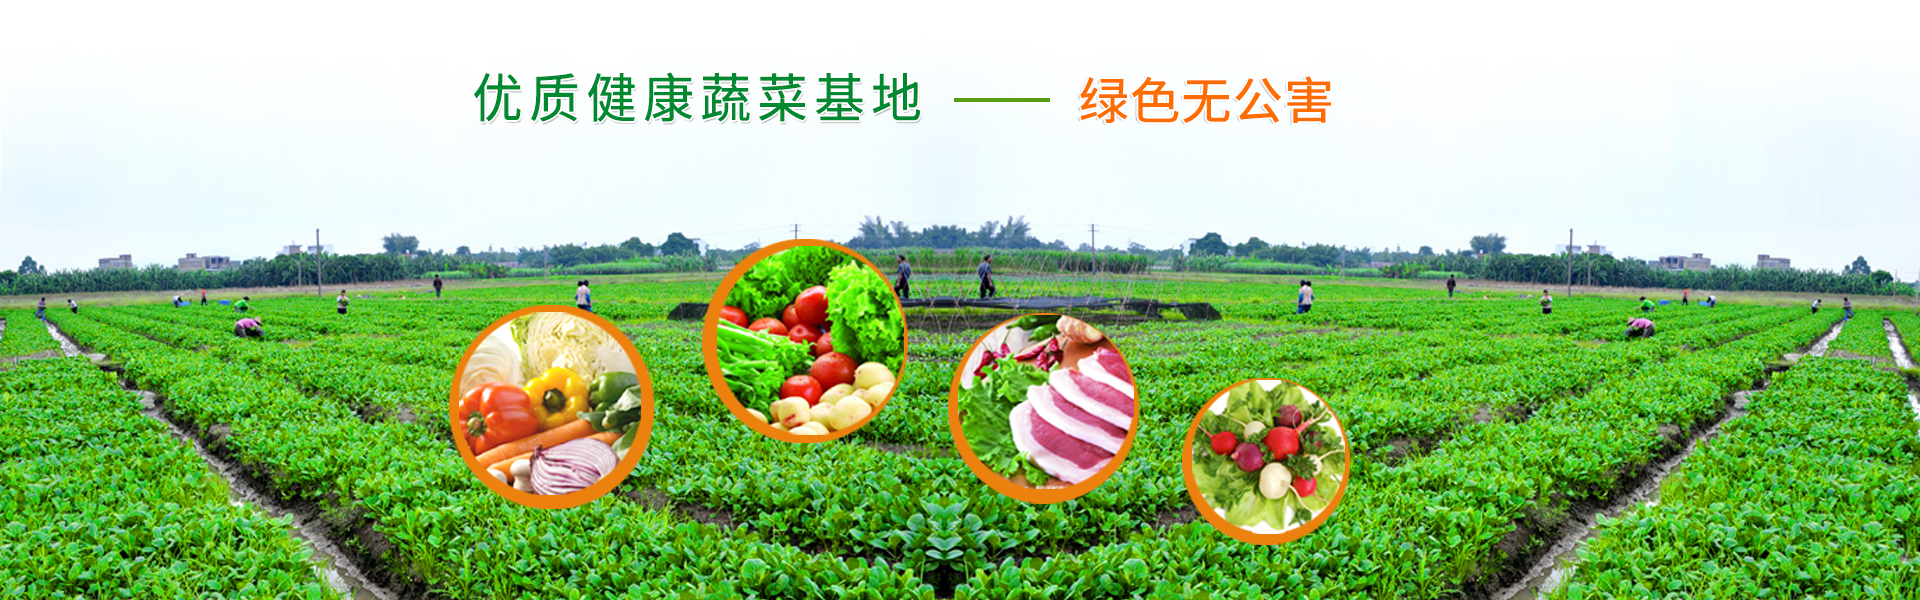 深圳农产品配送——优质健康的蔬菜基地——绿色无公害